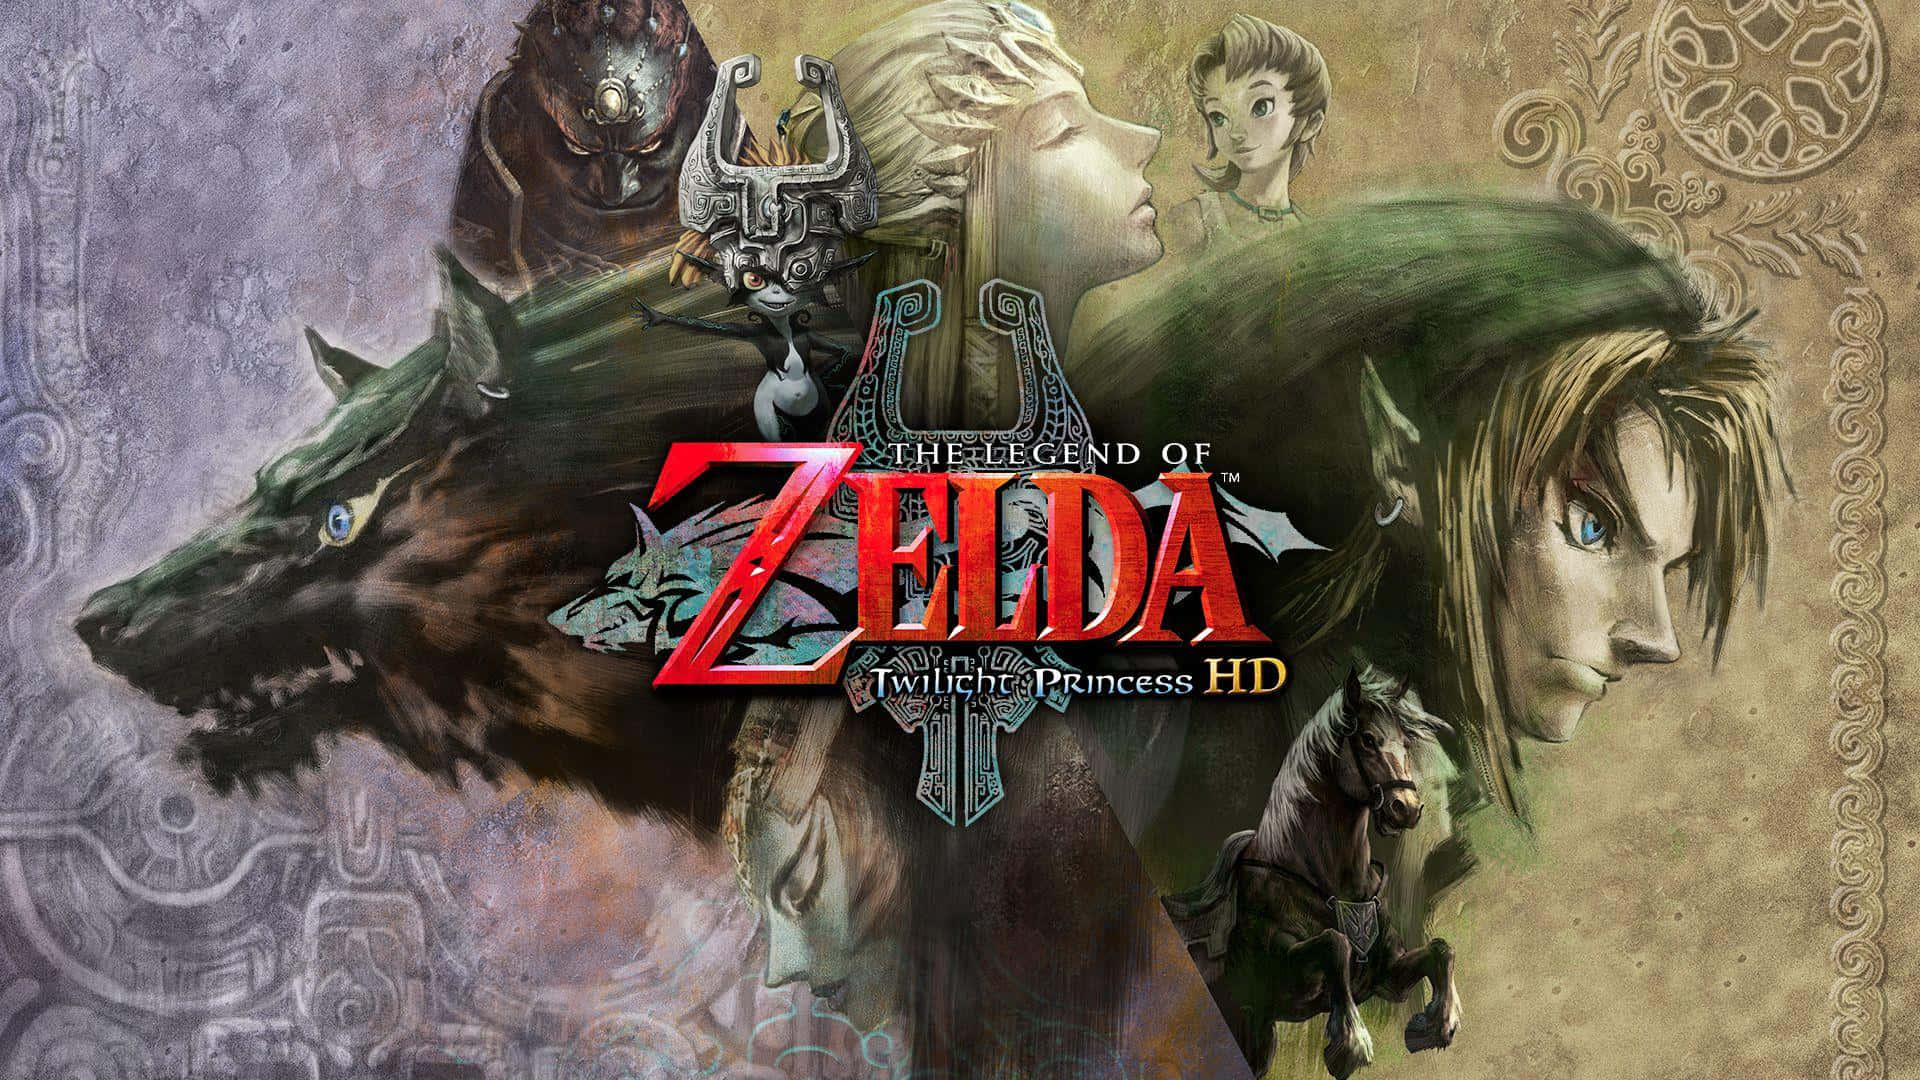 Linkbegegnet Gefahr Und Dunkelheit In The Legend Of Zelda: Twilight Princess. Wallpaper